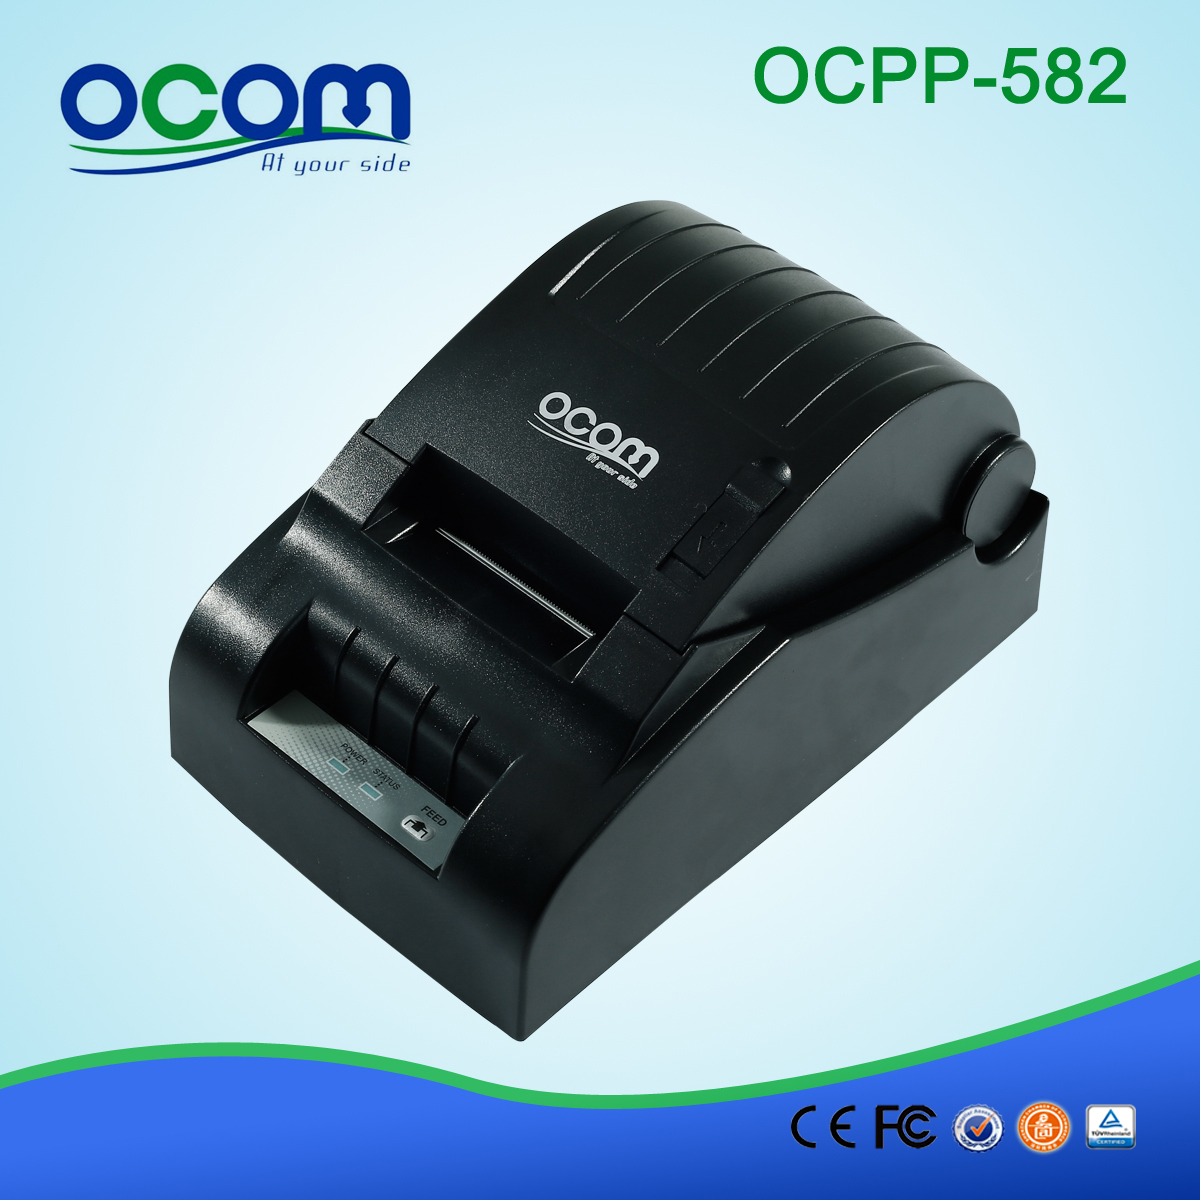 58mm Impresora Térmica de Recibo (OCPP-582)